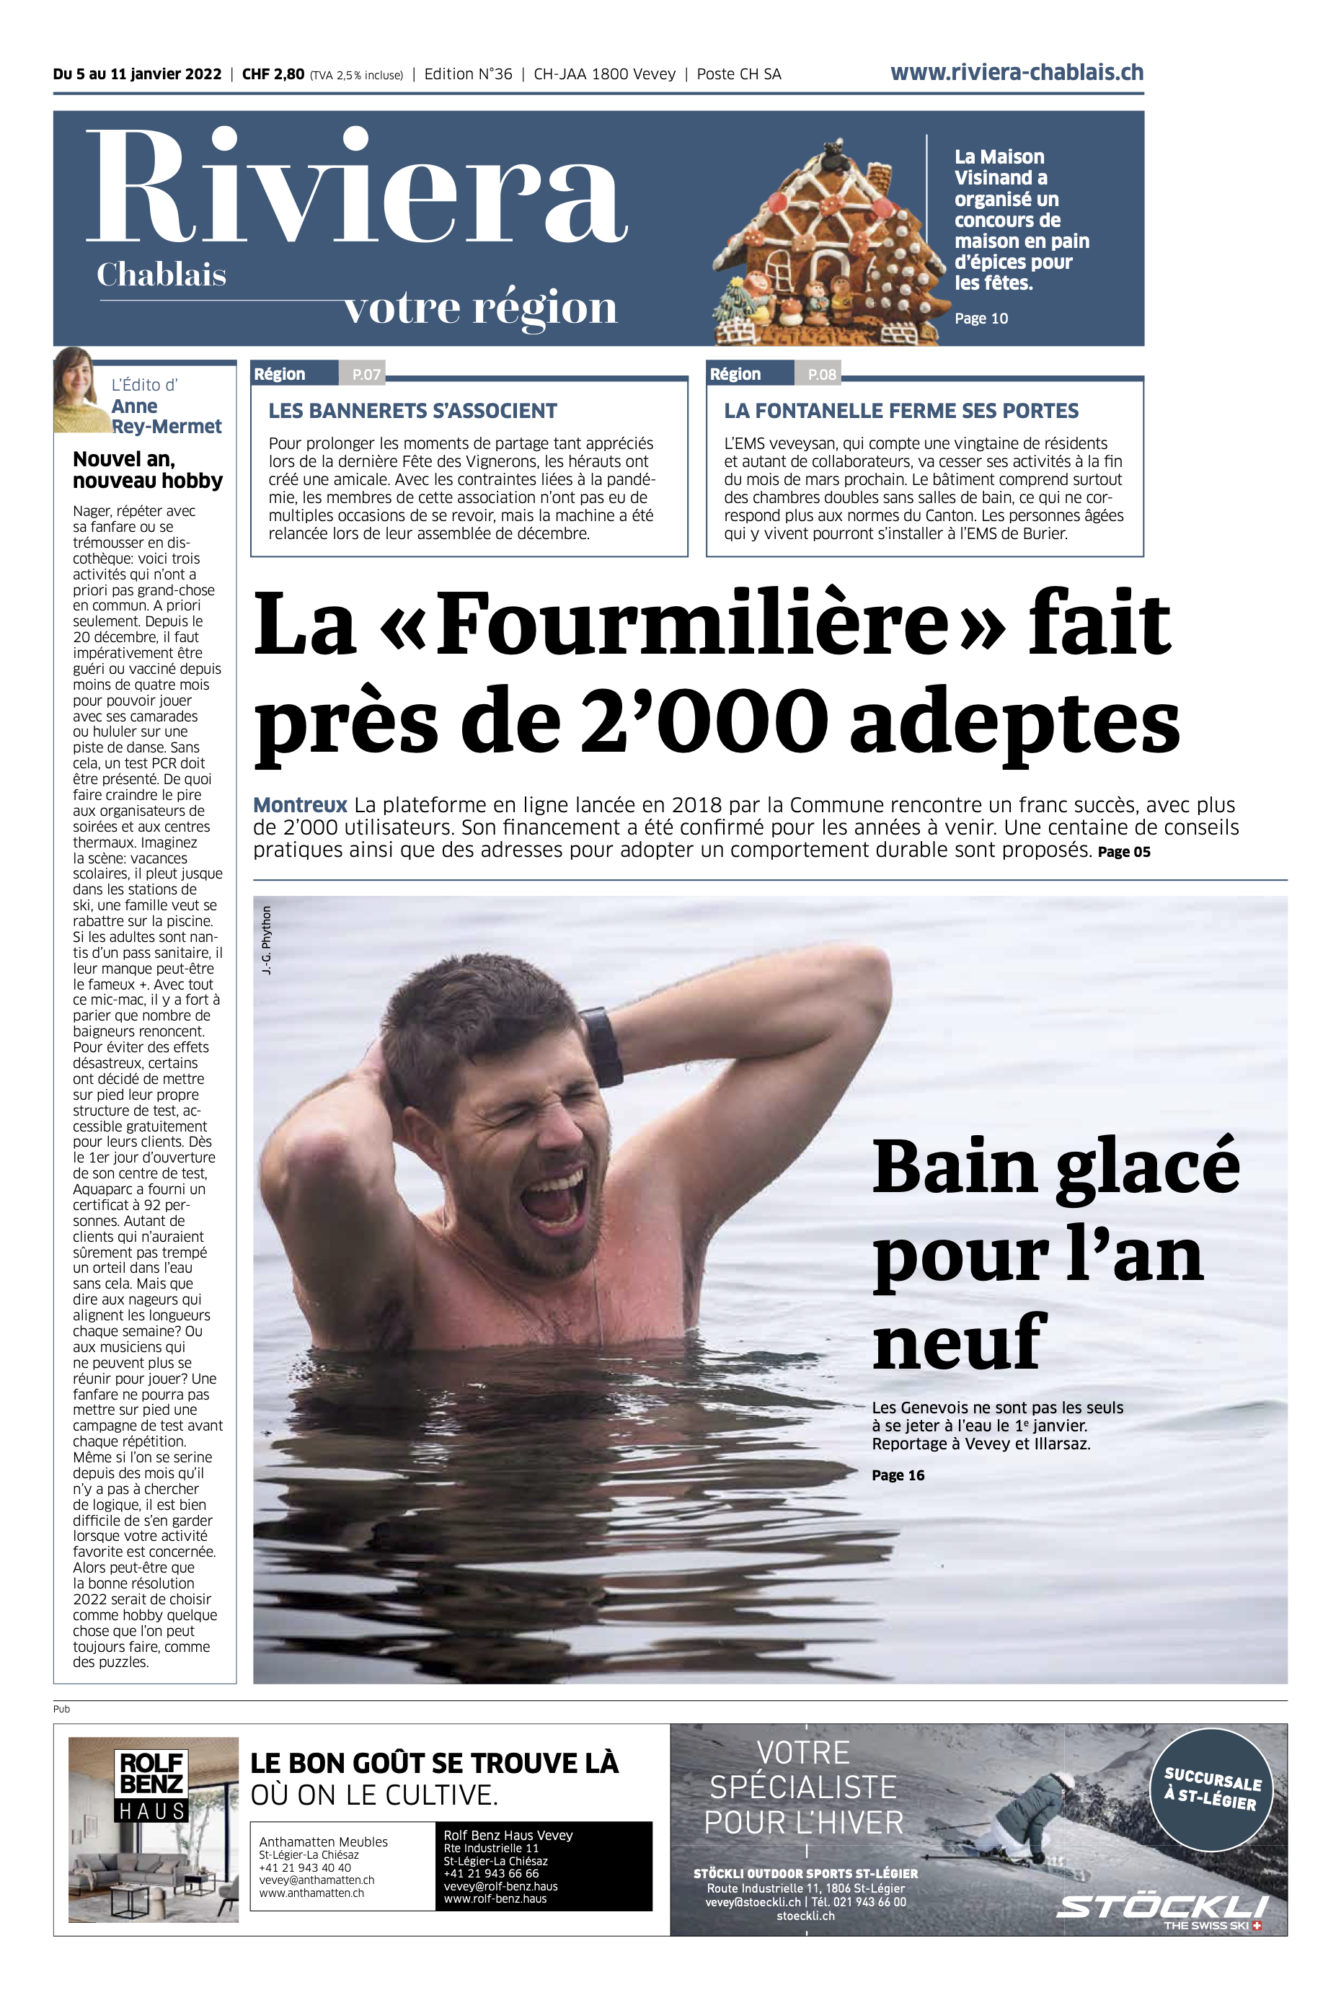 Journal Riviera n°36 ©Dessin de Gilles,, pour l'Article 2G+ dans les aquaparcs et bains thermaux du 5 janvier 2022 page 1